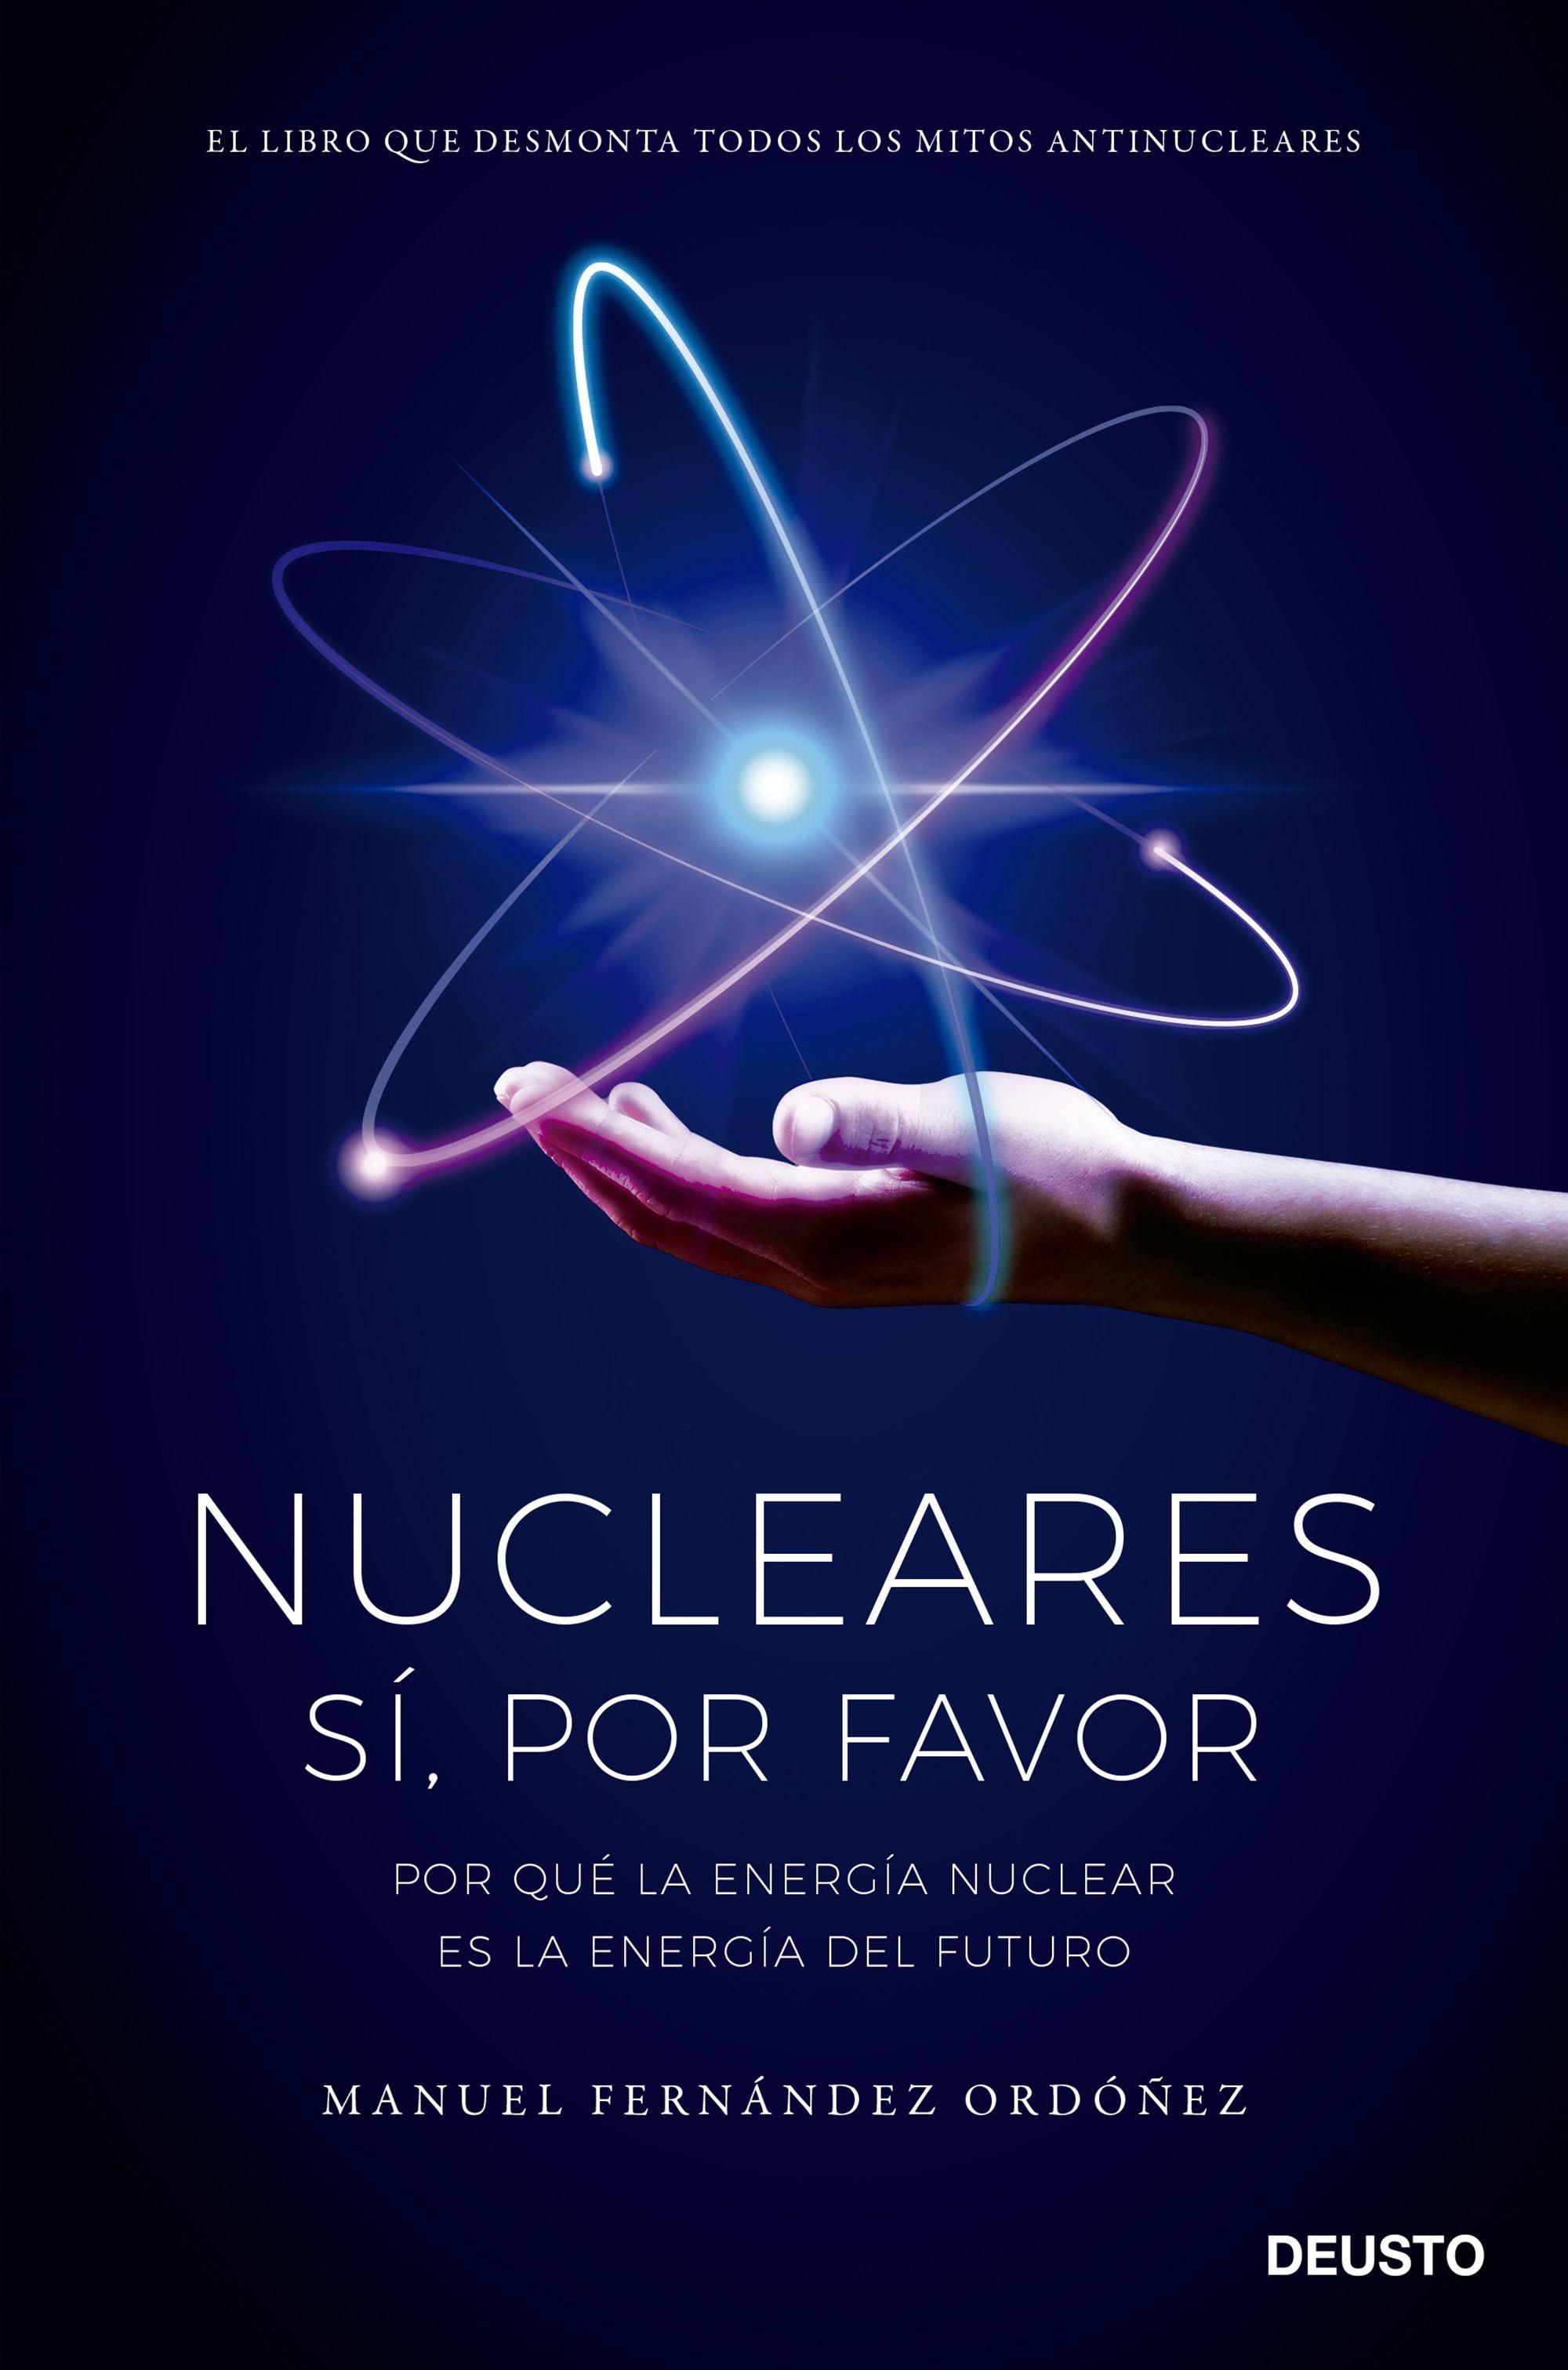 Nucleares: Sí, por Favor "Por que la Energía Nuclear Es la Energía del Futuro". 